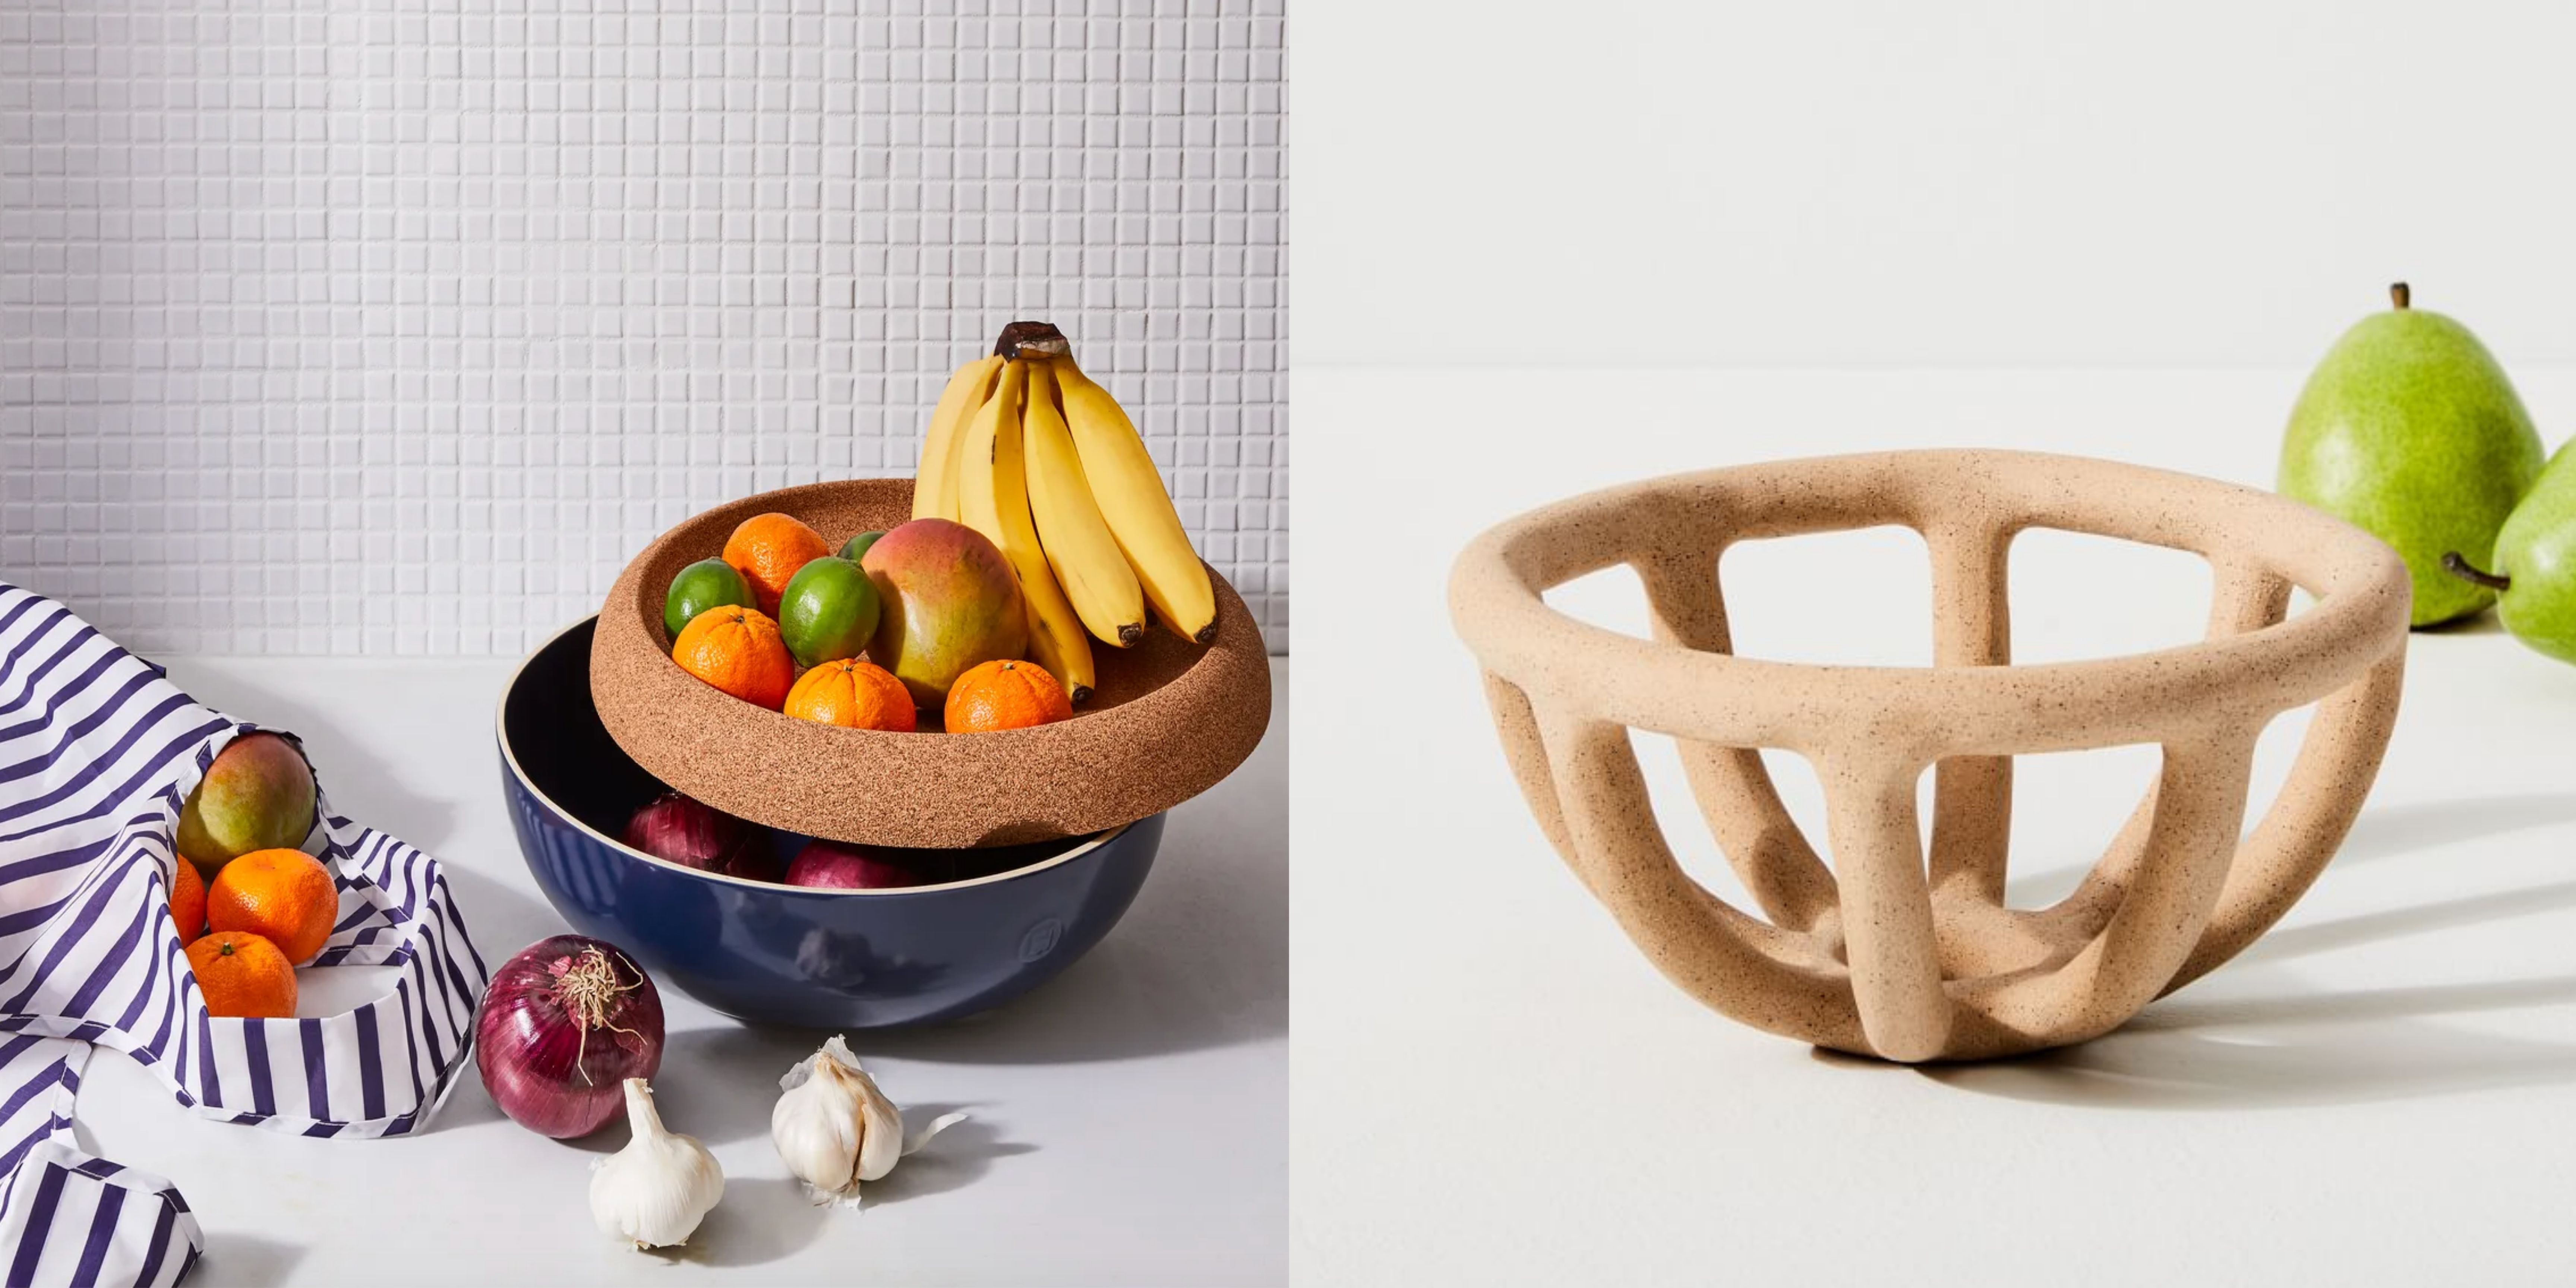 Best Fruit Bowls & Baskets - Foter